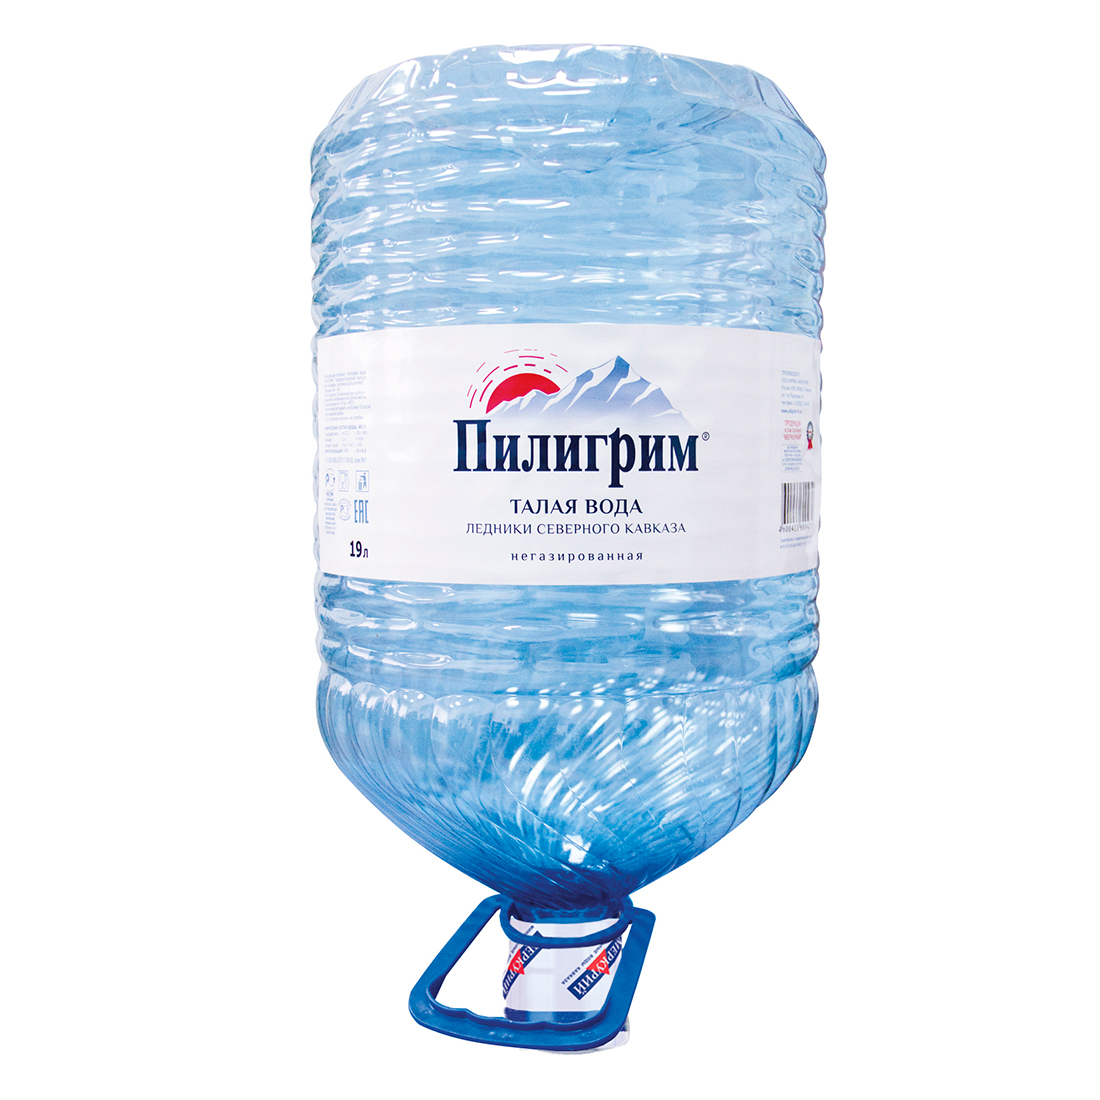 Пилигрим одноразовая тара - вода миниральная природная столовая питьевая вода 19 литров негазированная - 1